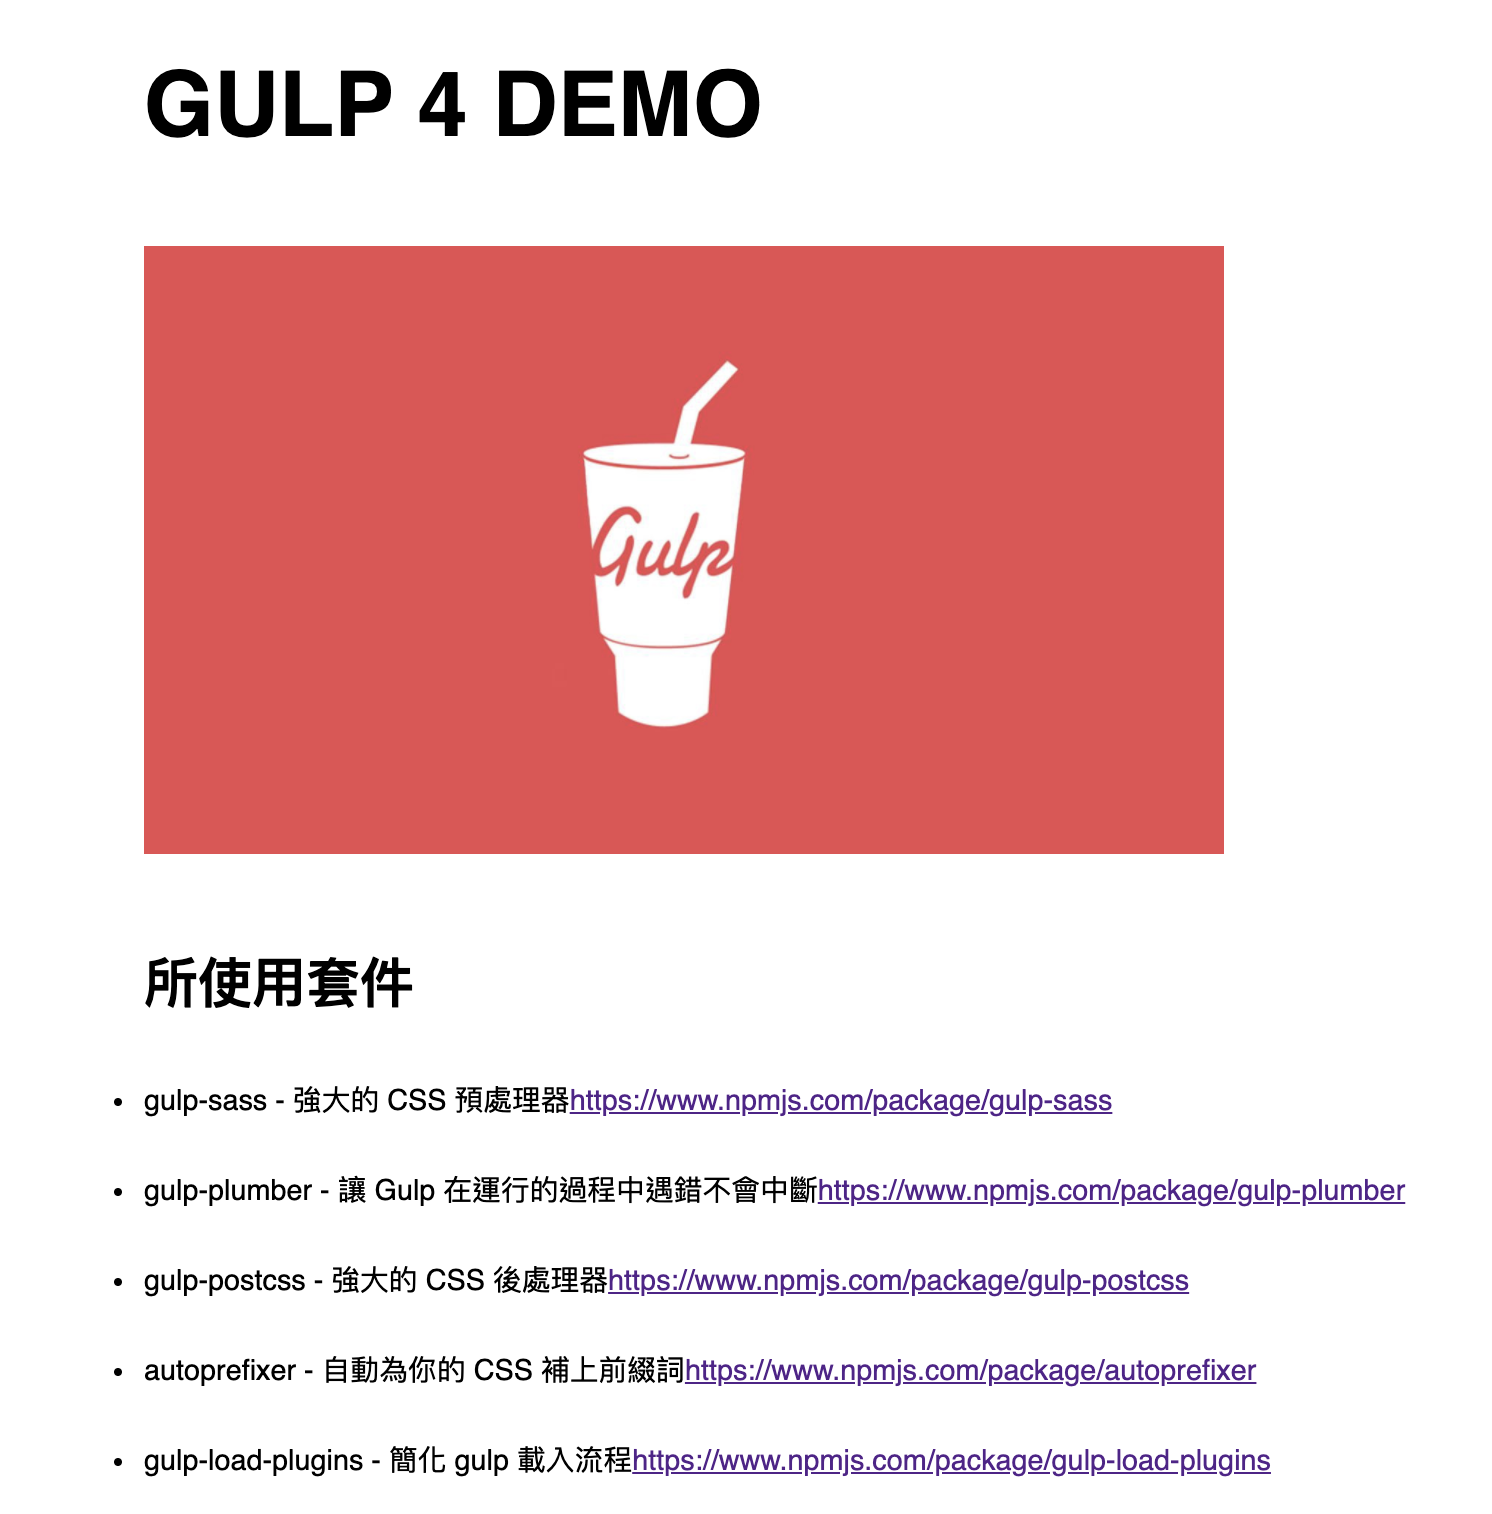 Gulp 4 demo